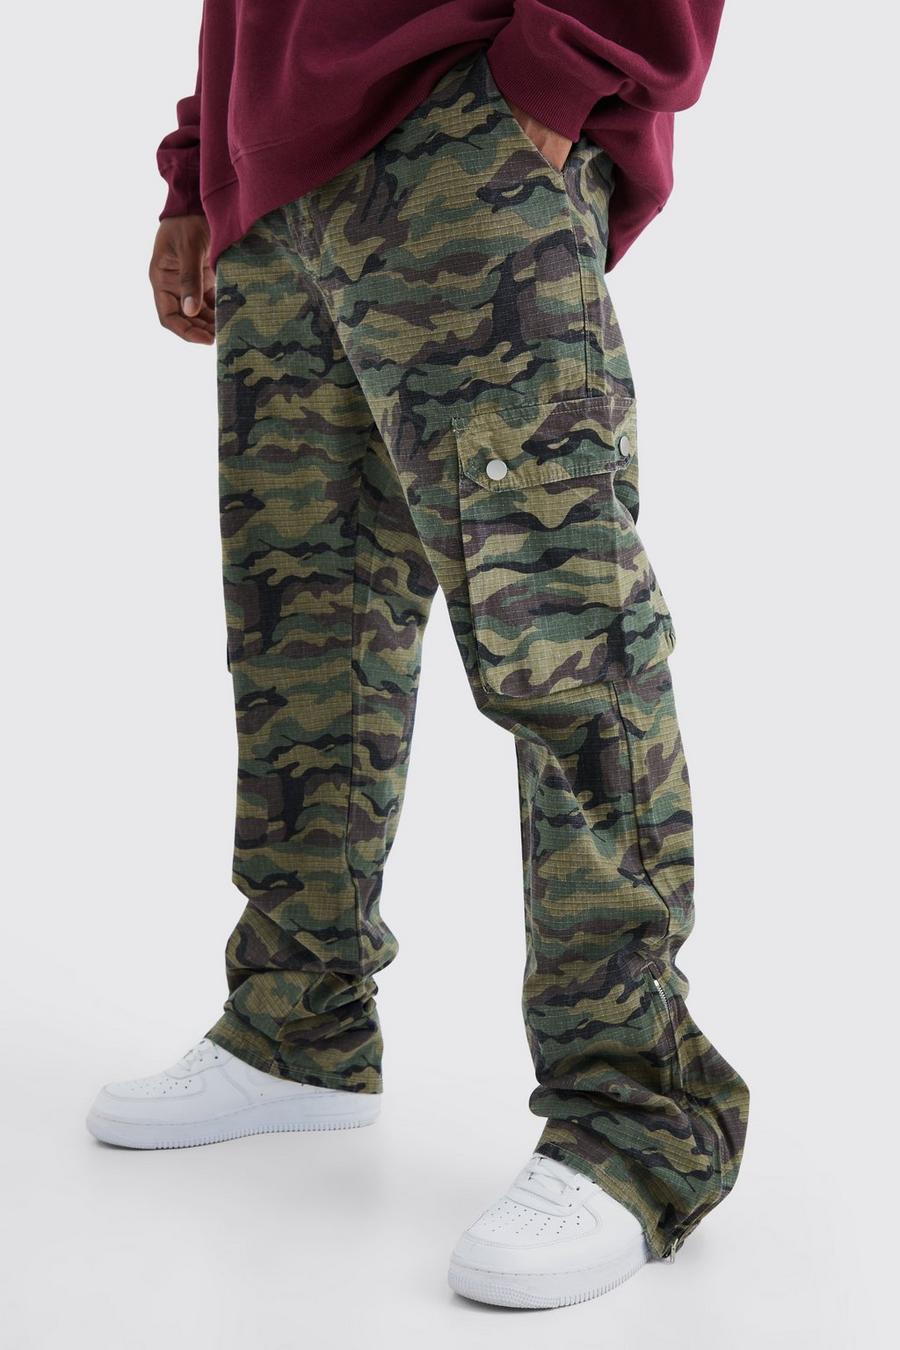 Pantaloni Plus Size Slim Fit in nylon ripstop in fantasia militare con inserti stile Cargo e pieghe sul fondo, Khaki image number 1